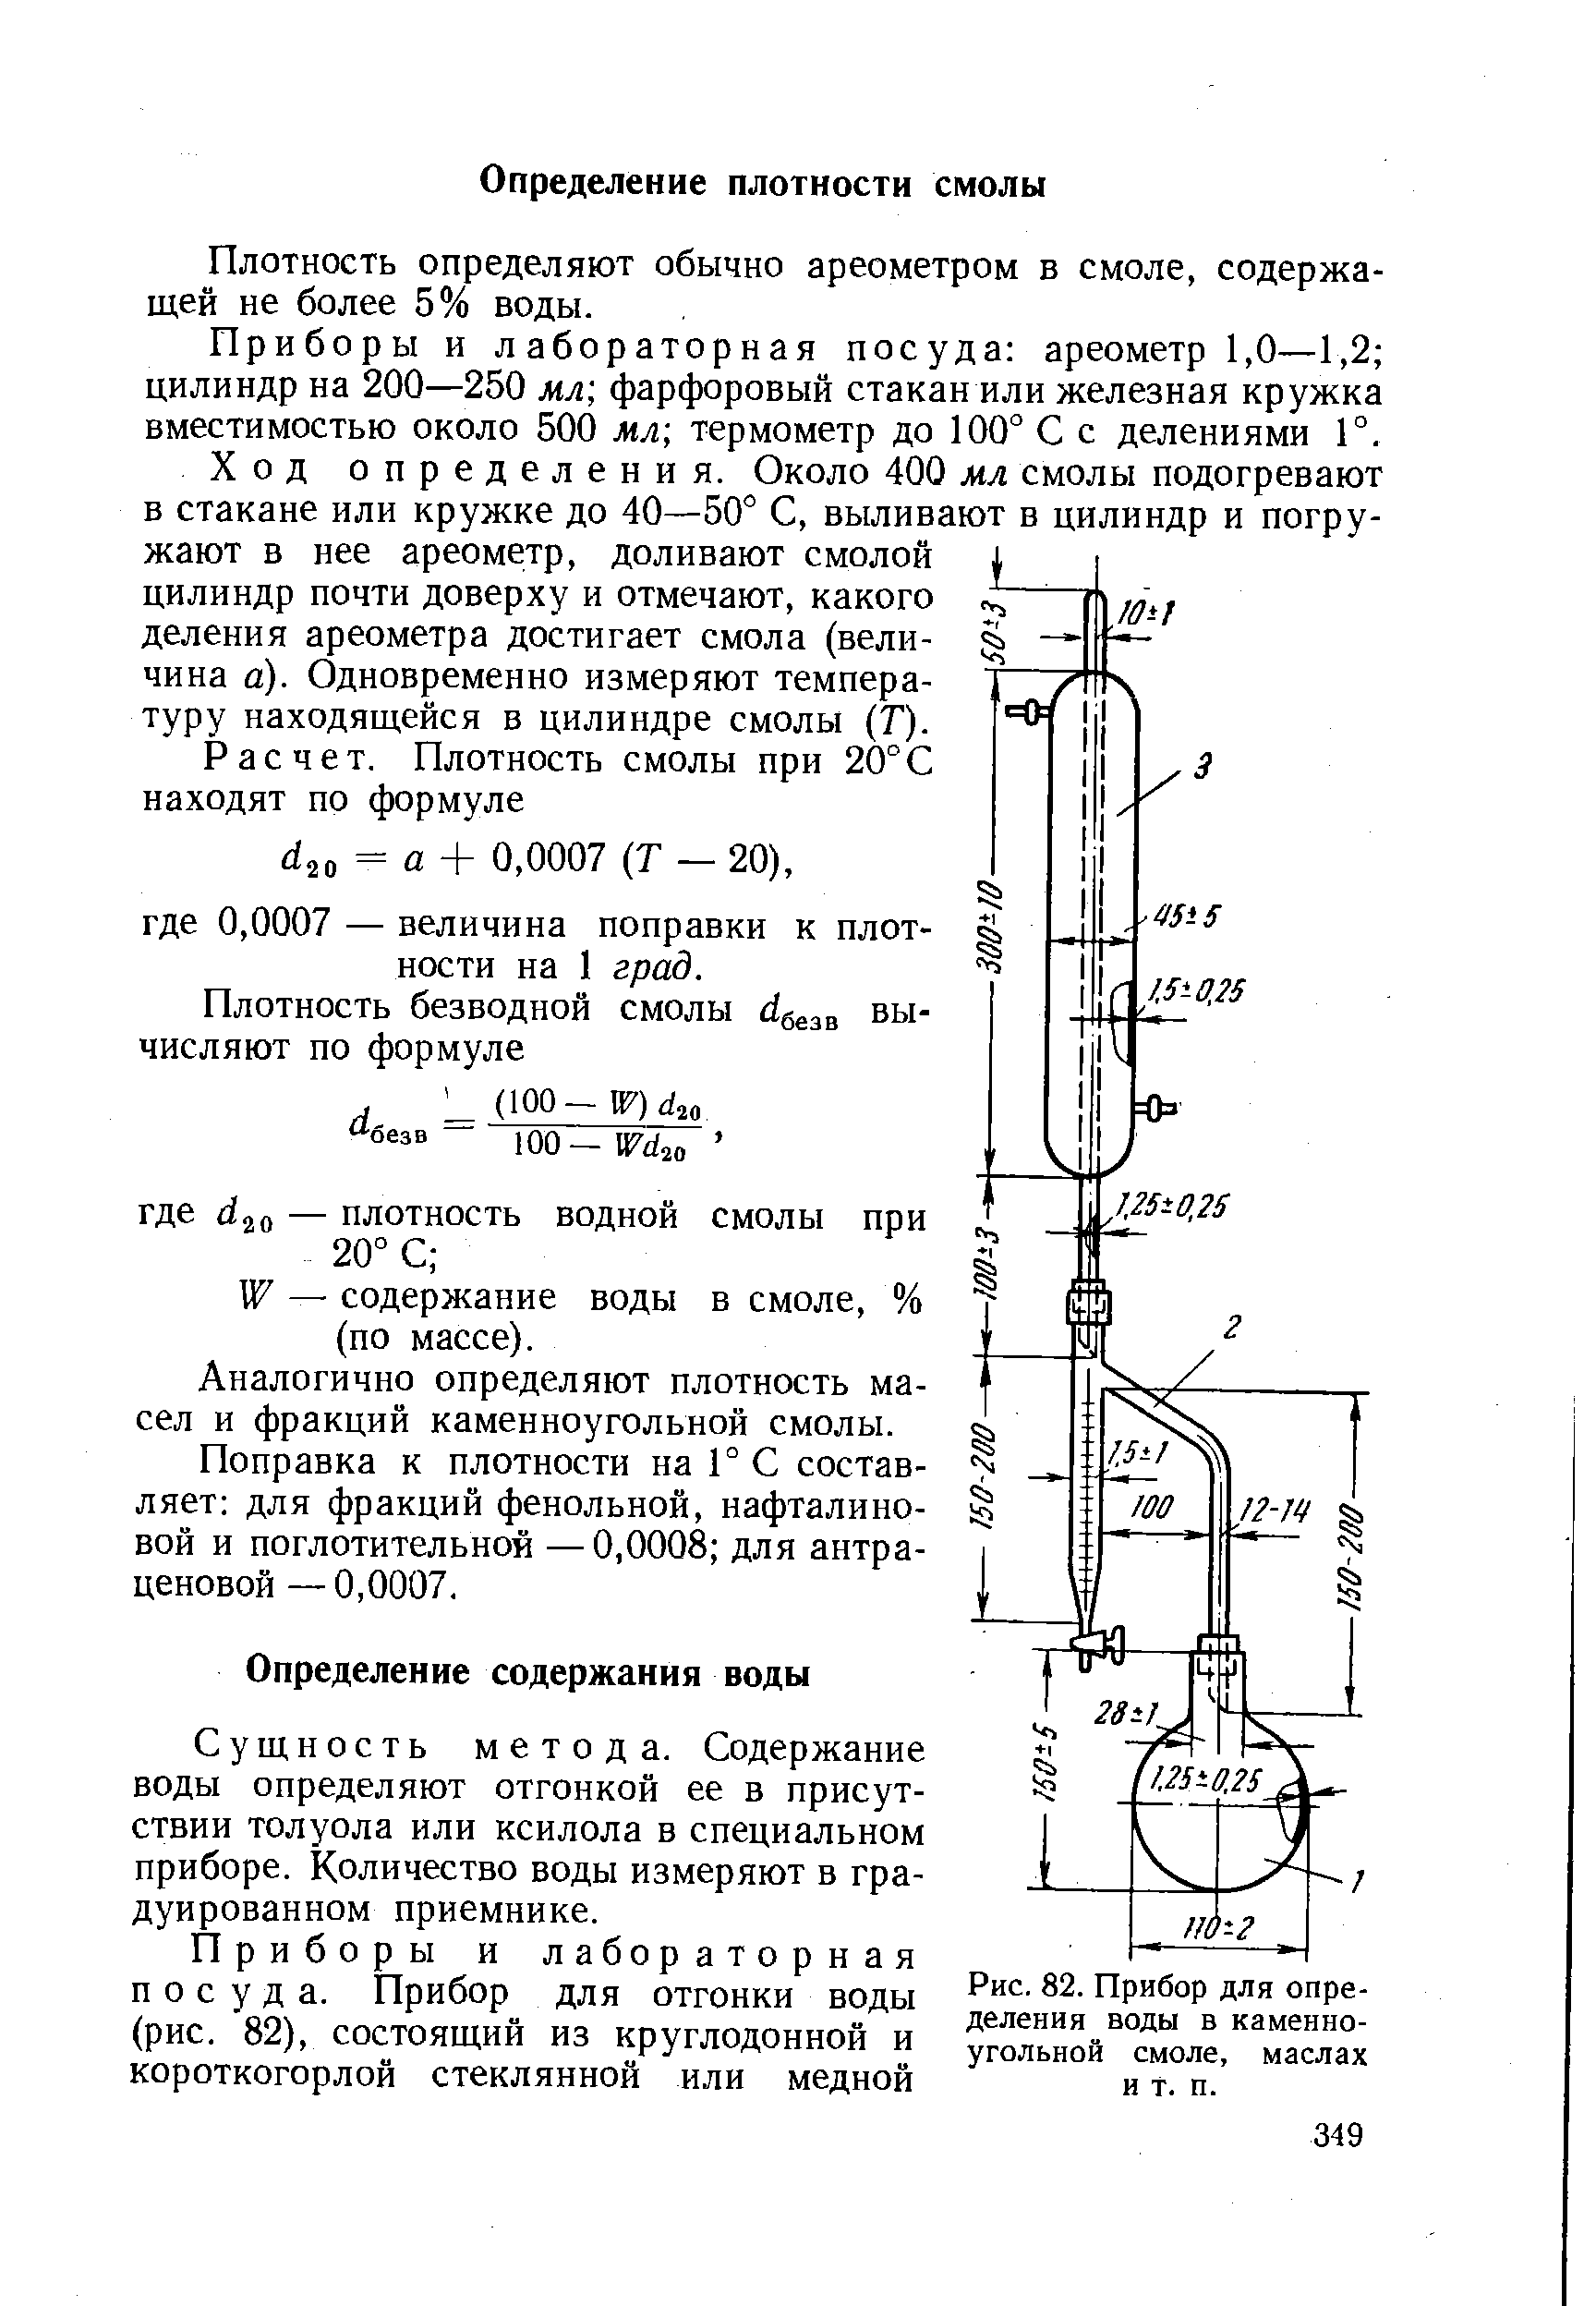 Способ измерения воды. Аков-10-1 аппарат для определения содержания воды. Приемник-ЛОВУШКА К аппарату аков-25.